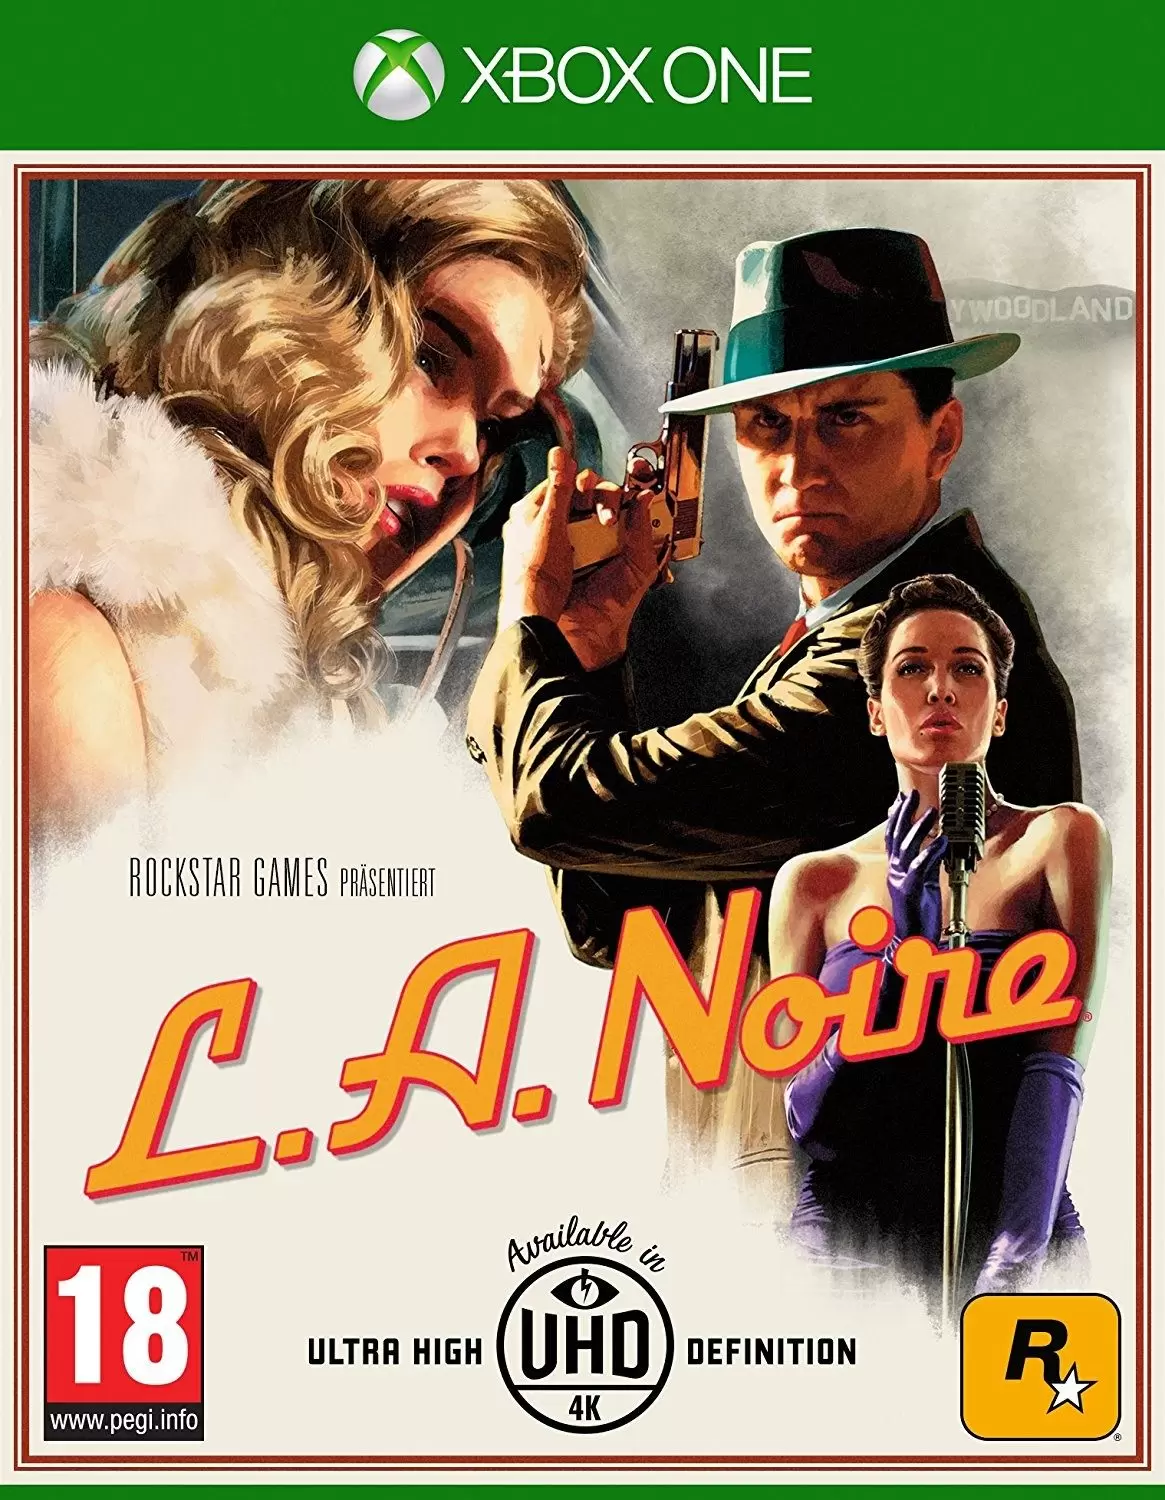 XBOX One Games - L.A. Noire